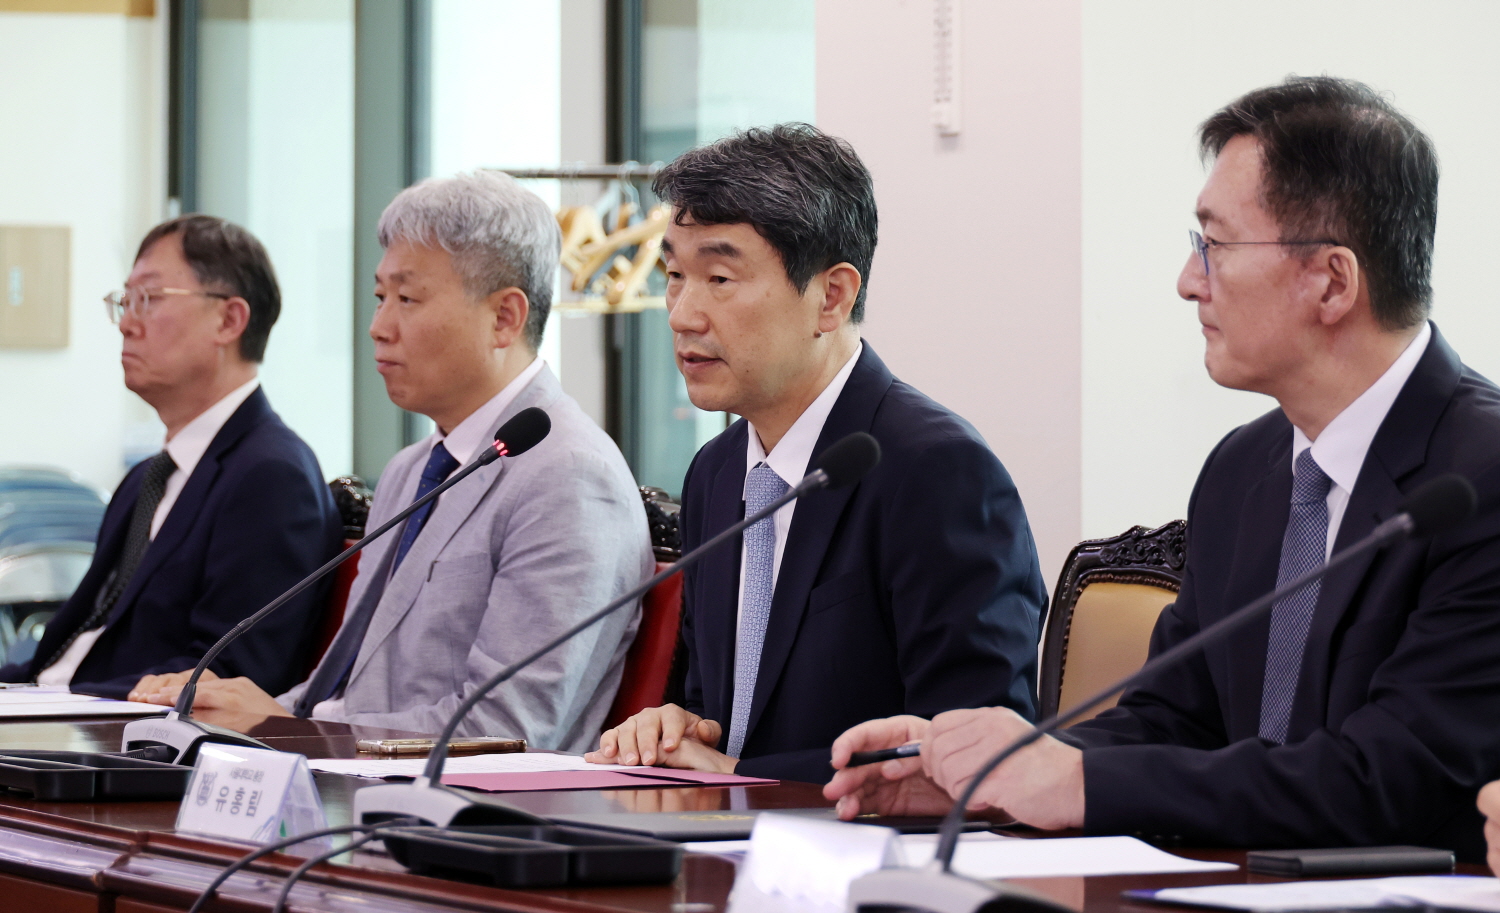 이주호 부총리 겸 교육부장관은 8월 16일(수), 서울대학교에서 열린 국가거점국립대학교 간 협력을 위한 협약식에 참석했다. 